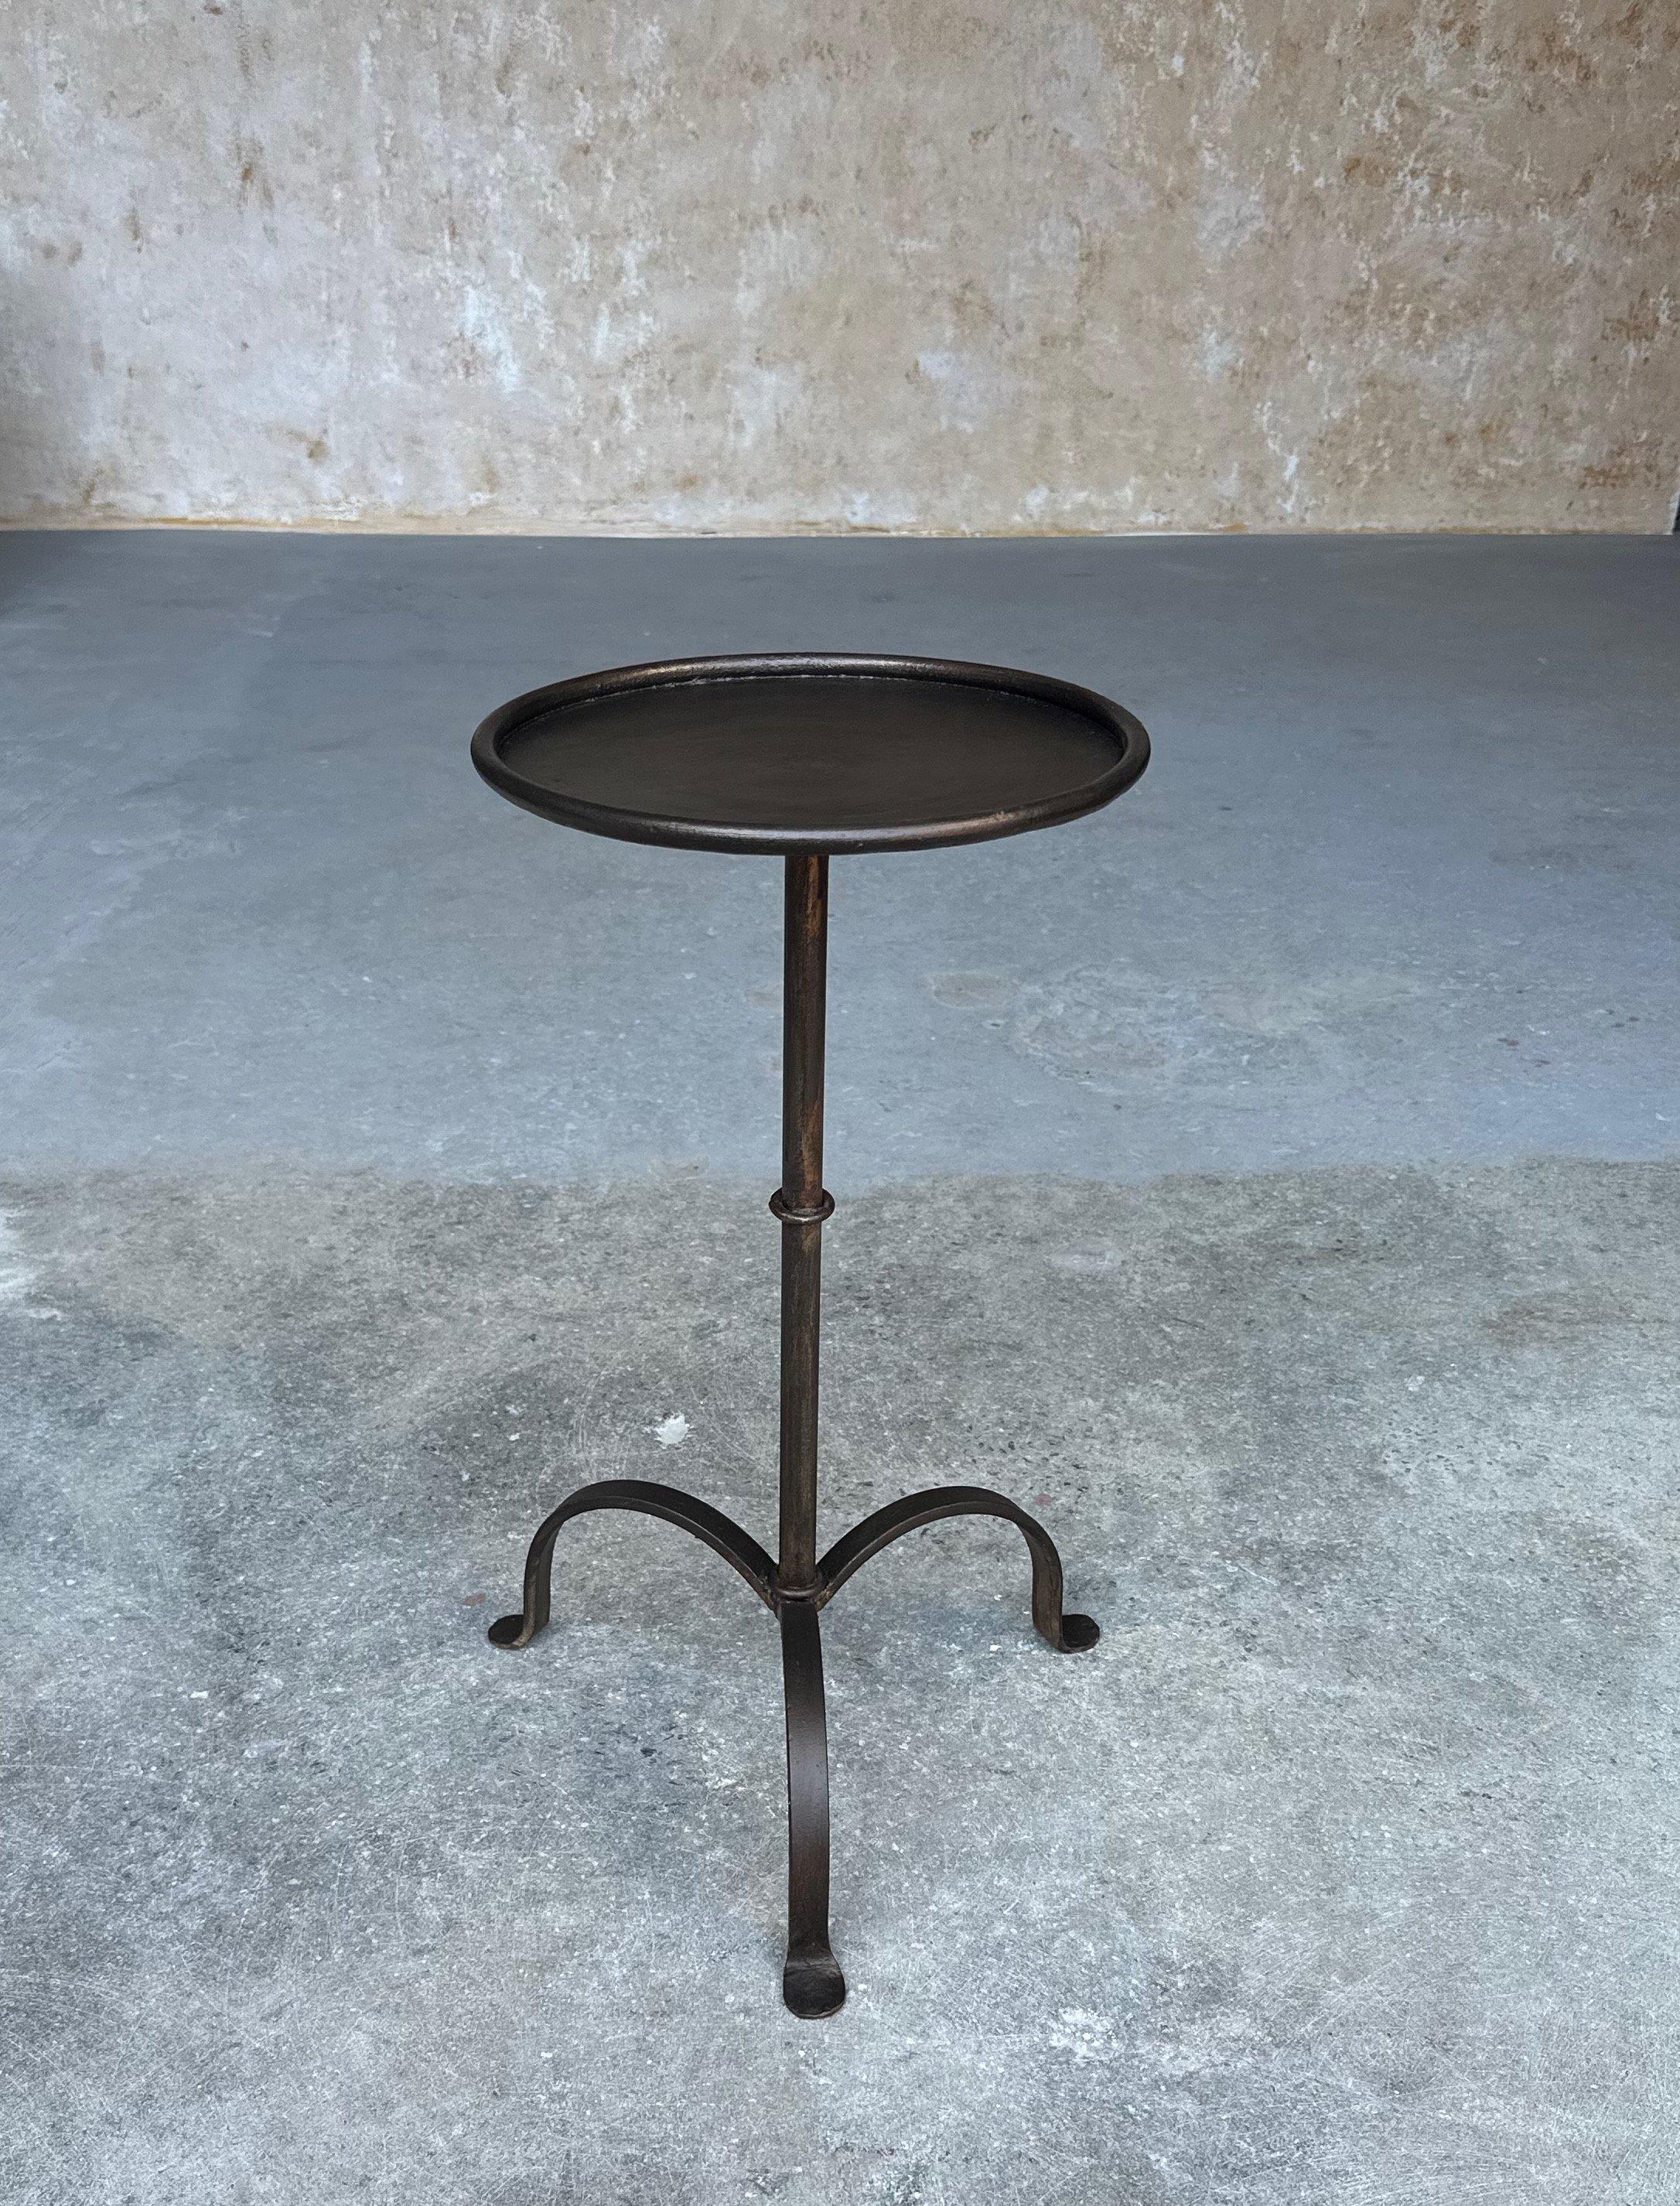 Dieser kürzlich handgefertigte kleine spanische Eisentisch ist nicht nur elegant, sondern auch funktionell. Der kreisförmige Stiel, der einem Vintage-Design aus den 1950er Jahren nachempfunden ist, wird von einem zentralen Ring akzentuiert, der als